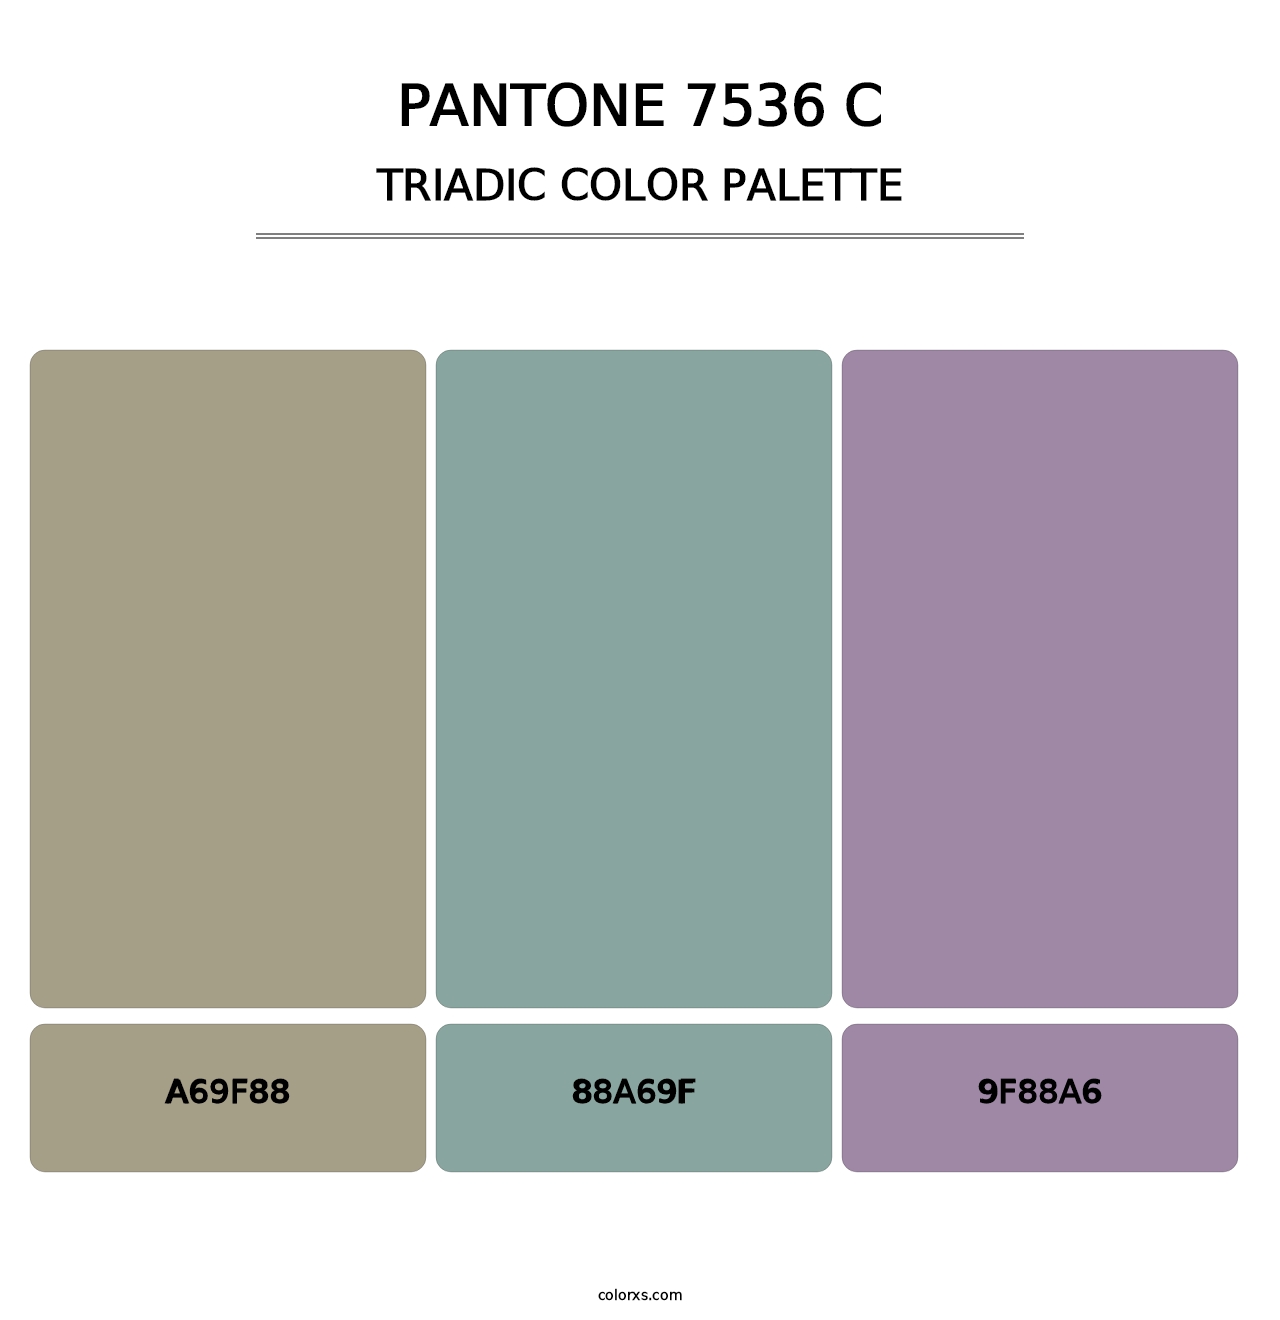 PANTONE 7536 C - Triadic Color Palette